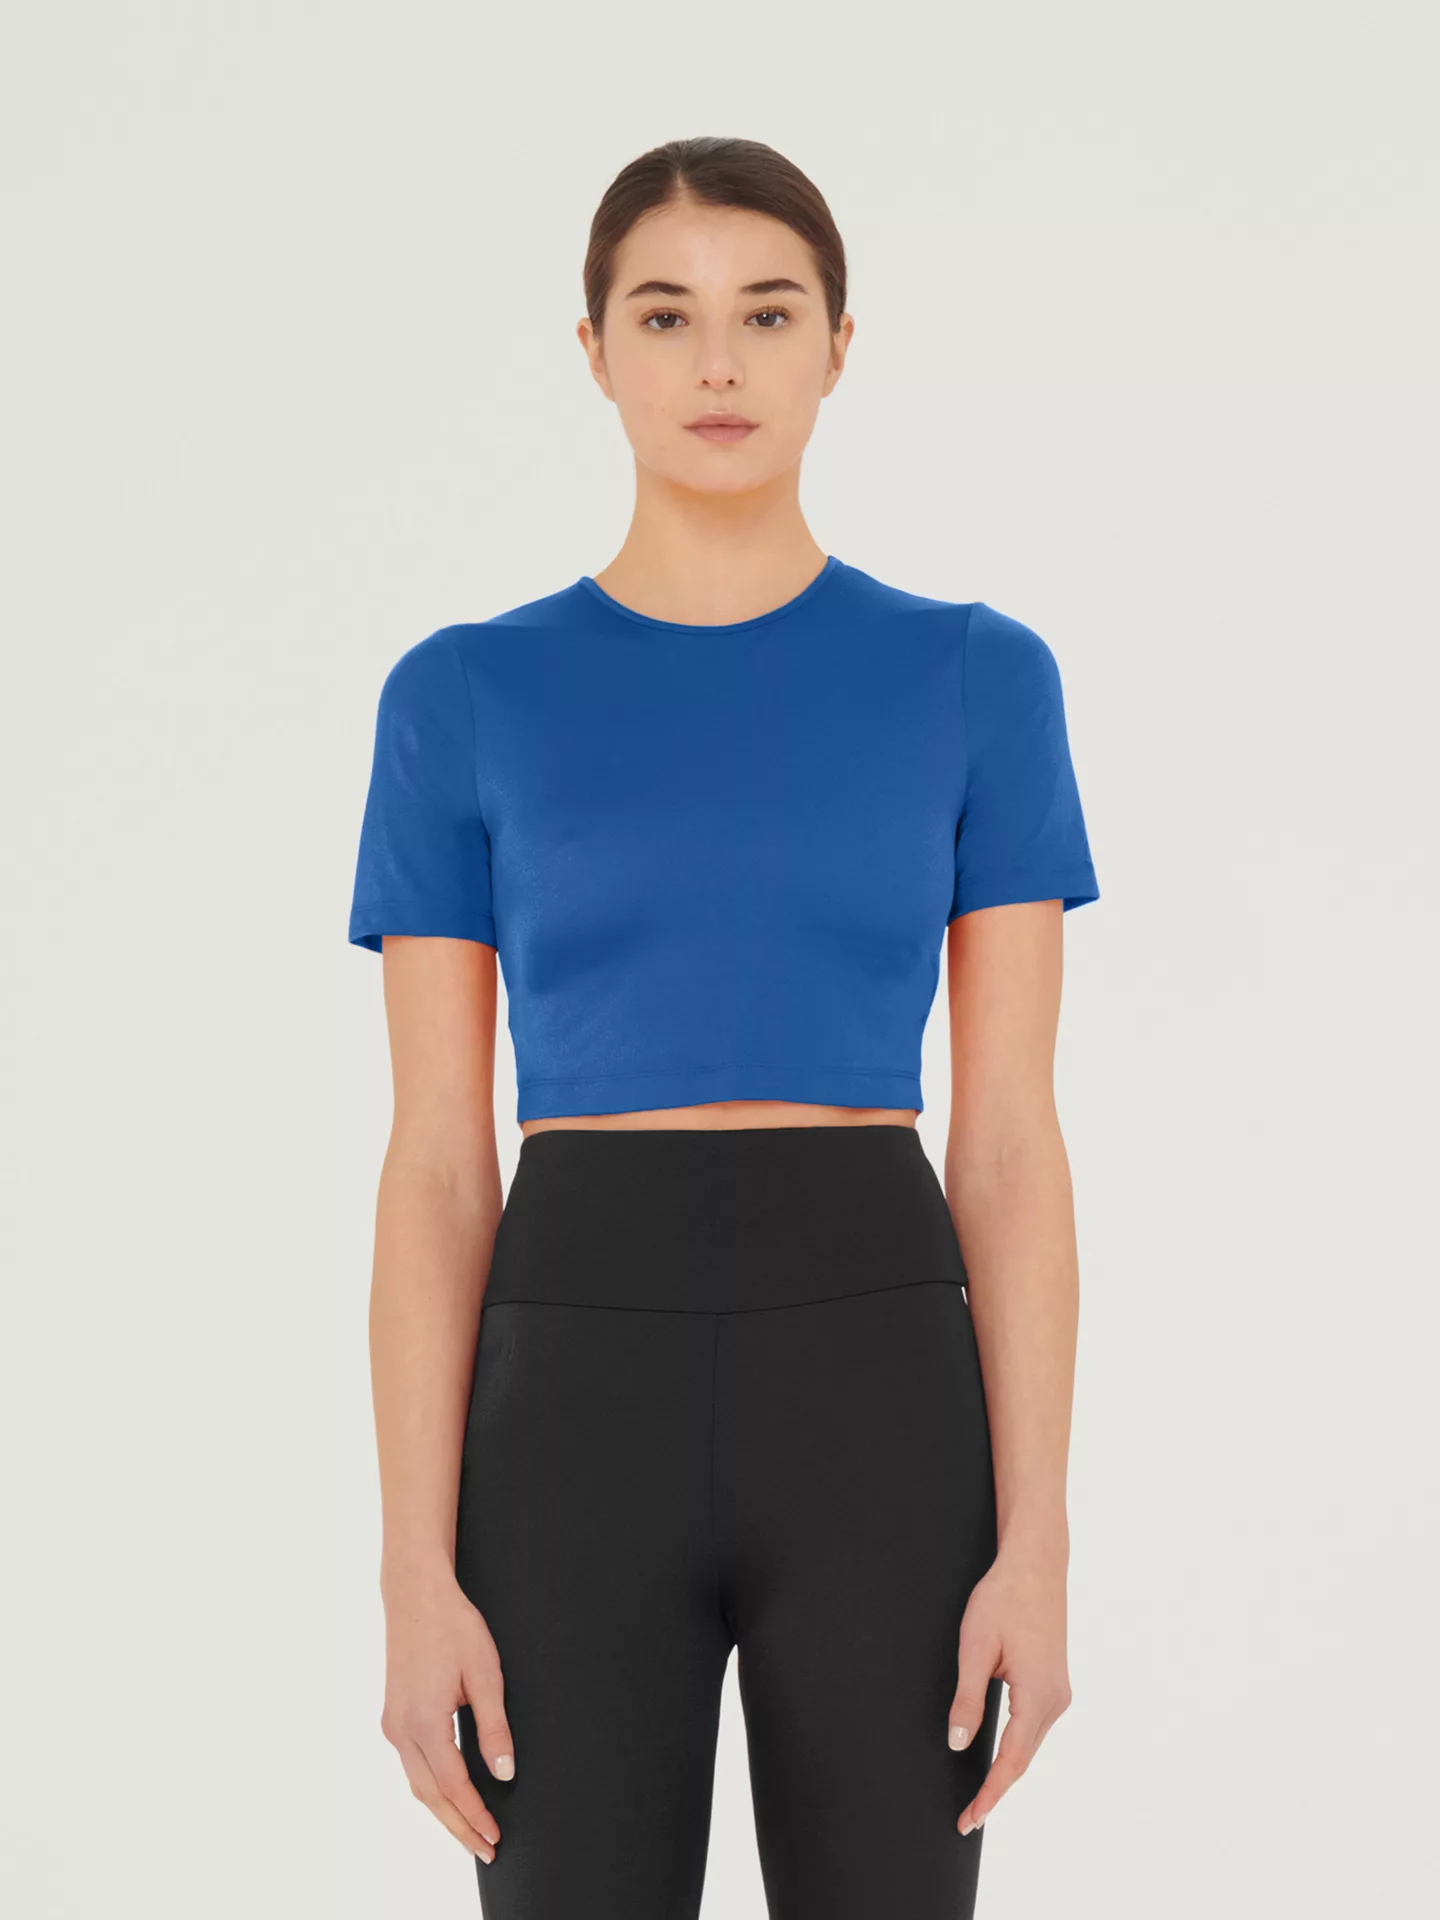 Wolford - The Workout Top Short Sleeves, Frau, sodalite blue, Größe: XS günstig online kaufen